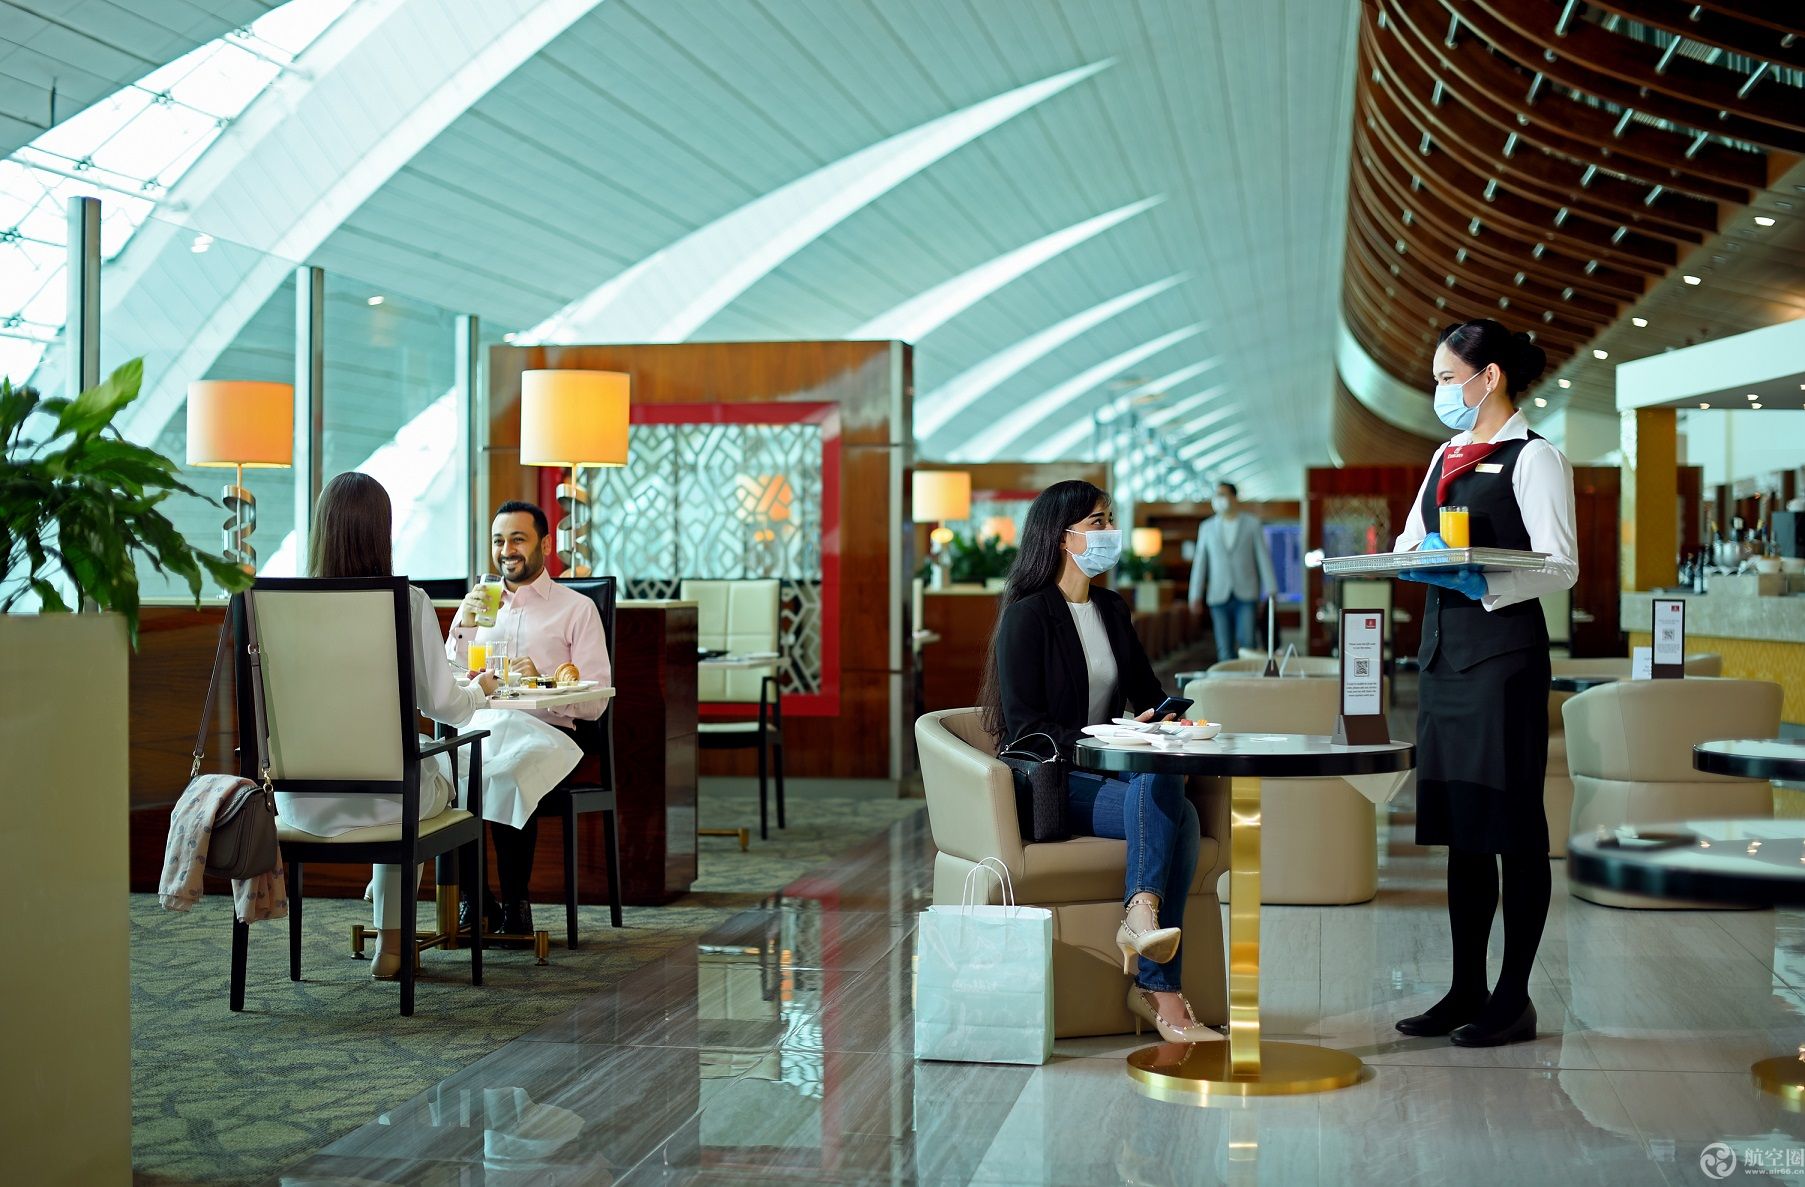 【机场贵宾室】 吉隆坡国际机场第二航站机场贵宾室 Wellness Spa at Level 3 KLIA2 International ...